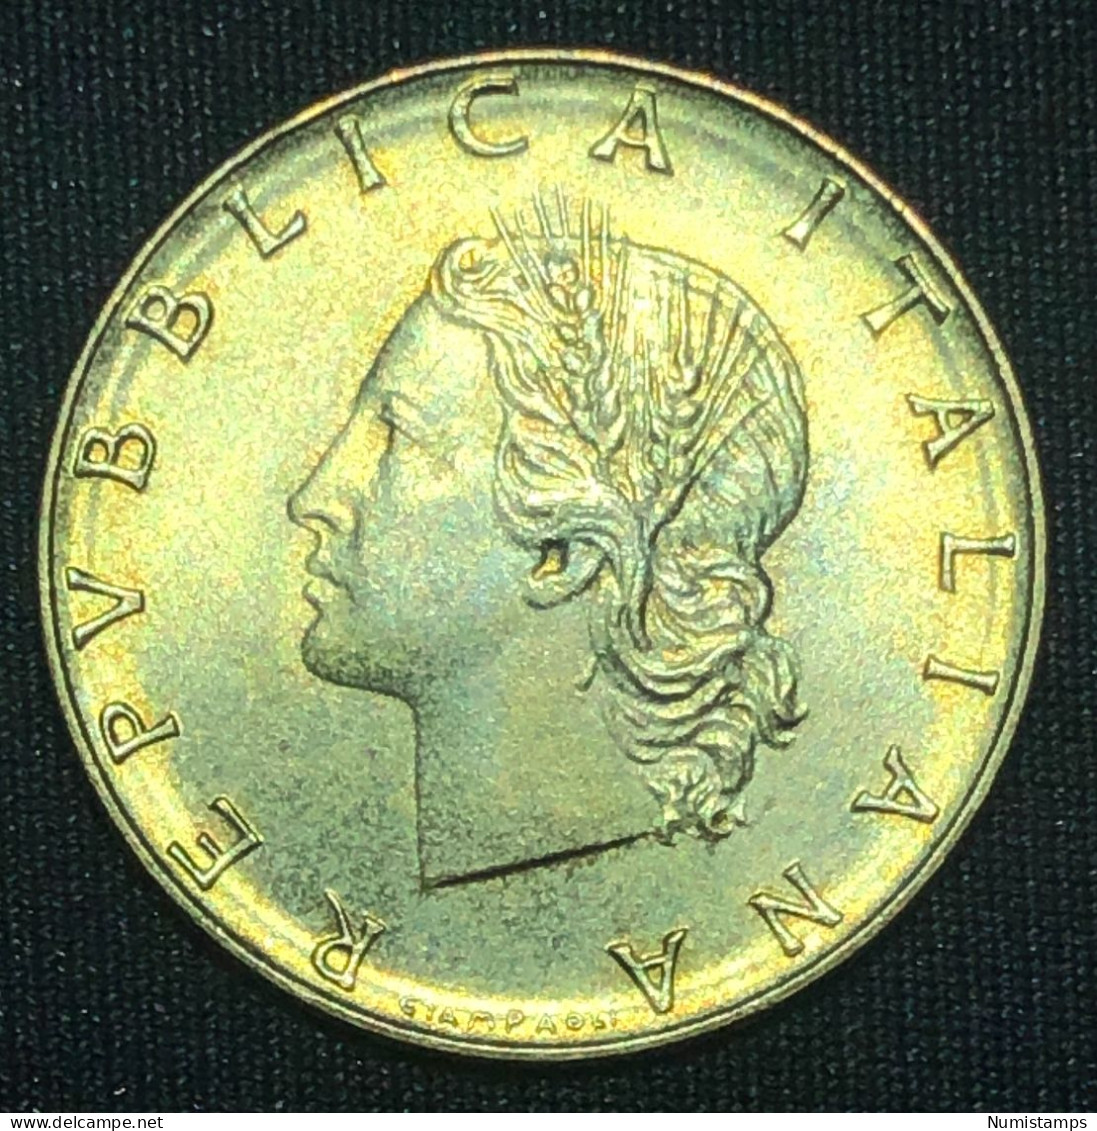 Italia 20 Lire, 1977 - 20 Liras